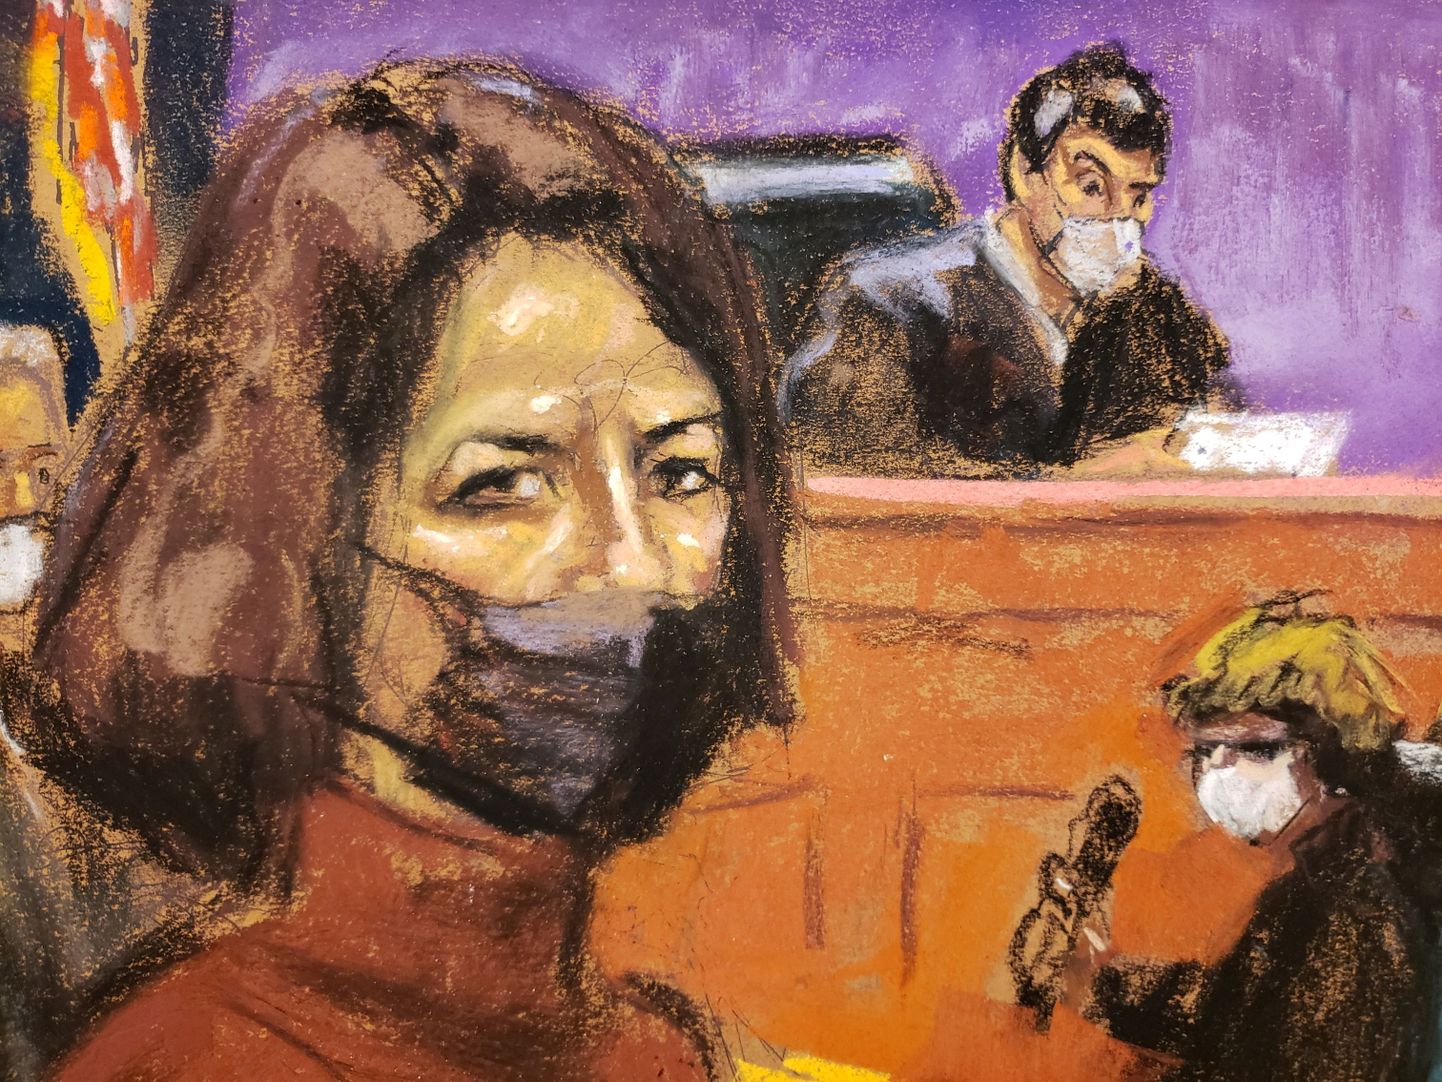 Kohtukunstnik Jane Rosenbergi joonistus Ghislaine Maxwellist New Yorgi kohtus, kus ta süüdi mõisteti